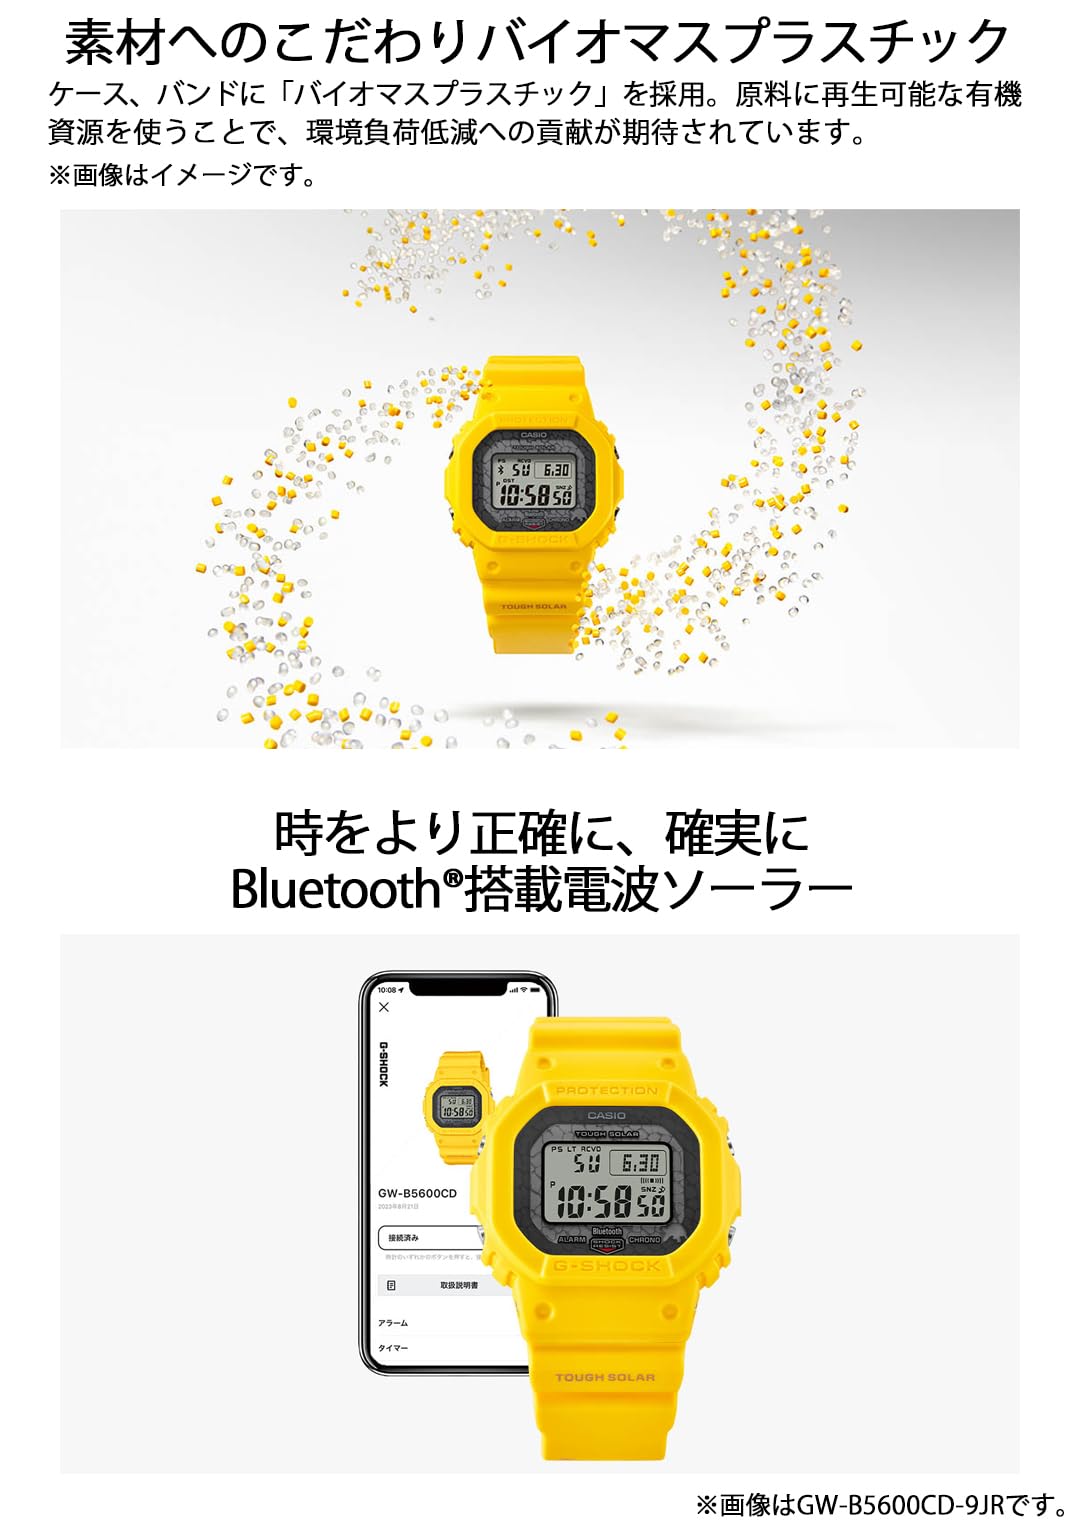 ジーショック [カシオ] 腕時計 【国内正規品】チャールズ・ダーウィン財団コラボレーションモデル Bluetooth搭載 バイオマスプラスチック採用 GW-B5600CD-1A3JR メンズ ブラック - BanzaiHobby